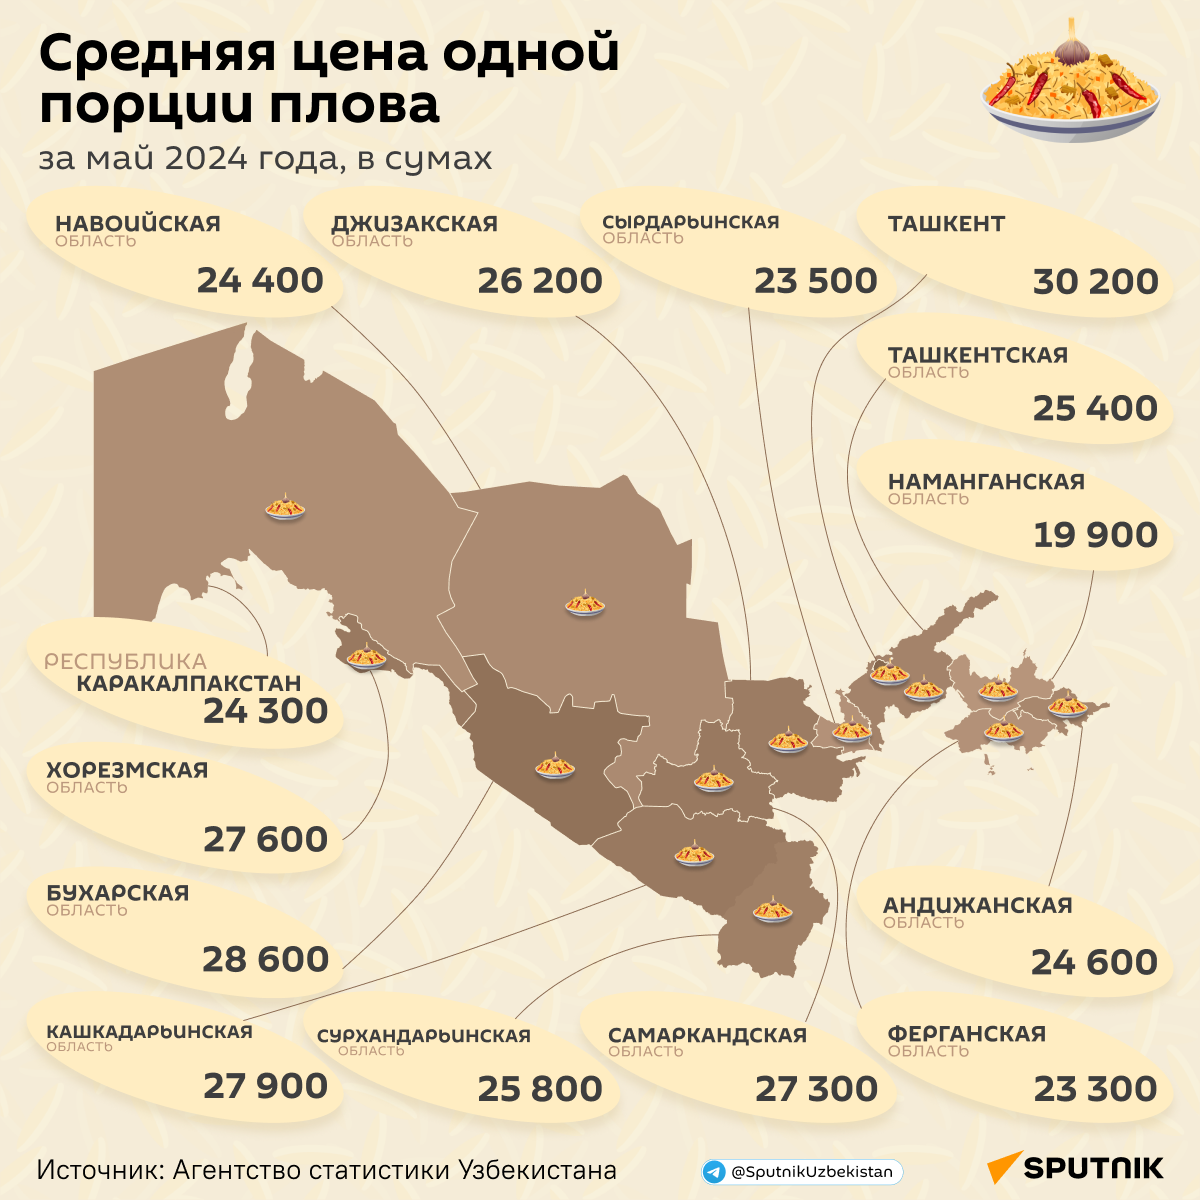 Какая средняя цена 1 порции плова  - Sputnik Узбекистан